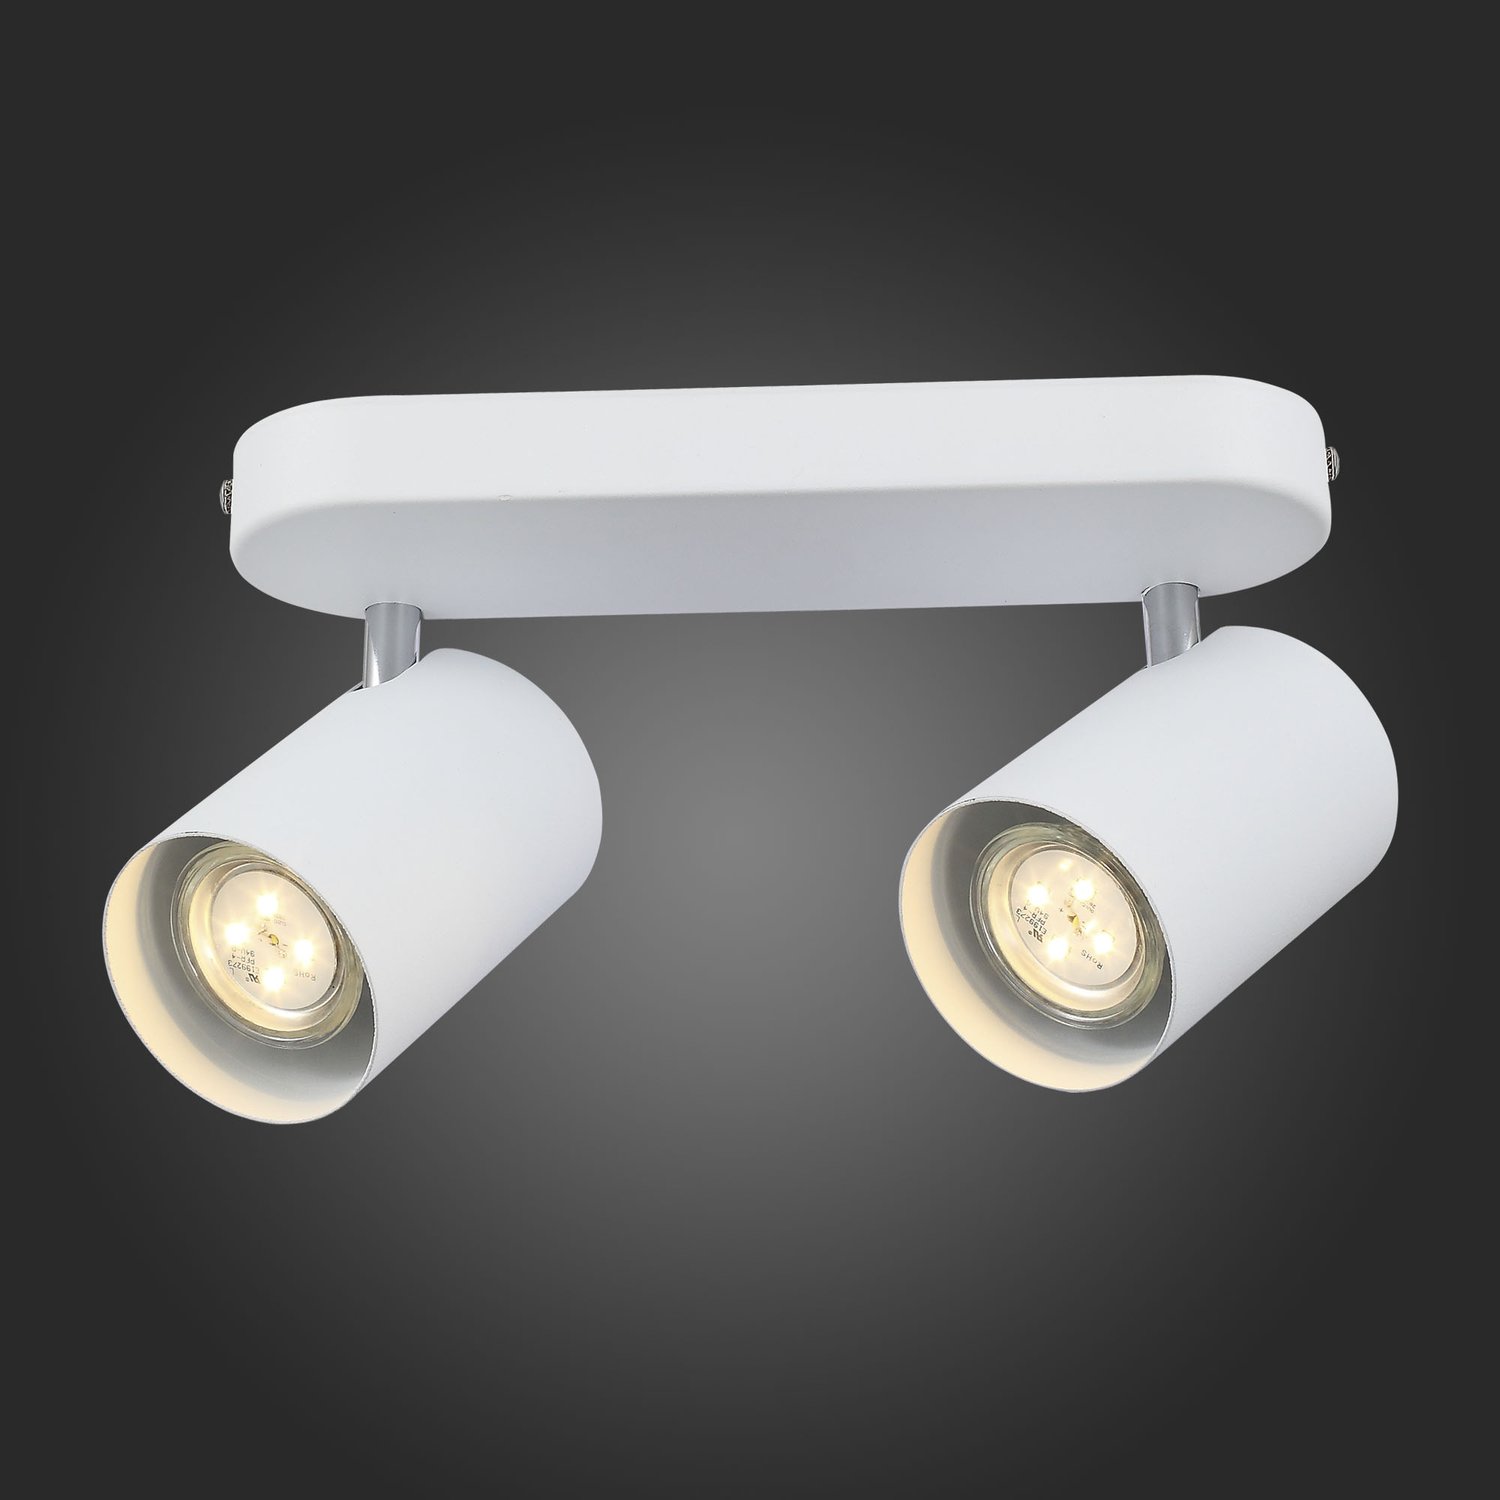 SL597.501.02 Спот ST-Luce Белый, Хром/Белый GU10 LED 2*3W Потолочные светильники